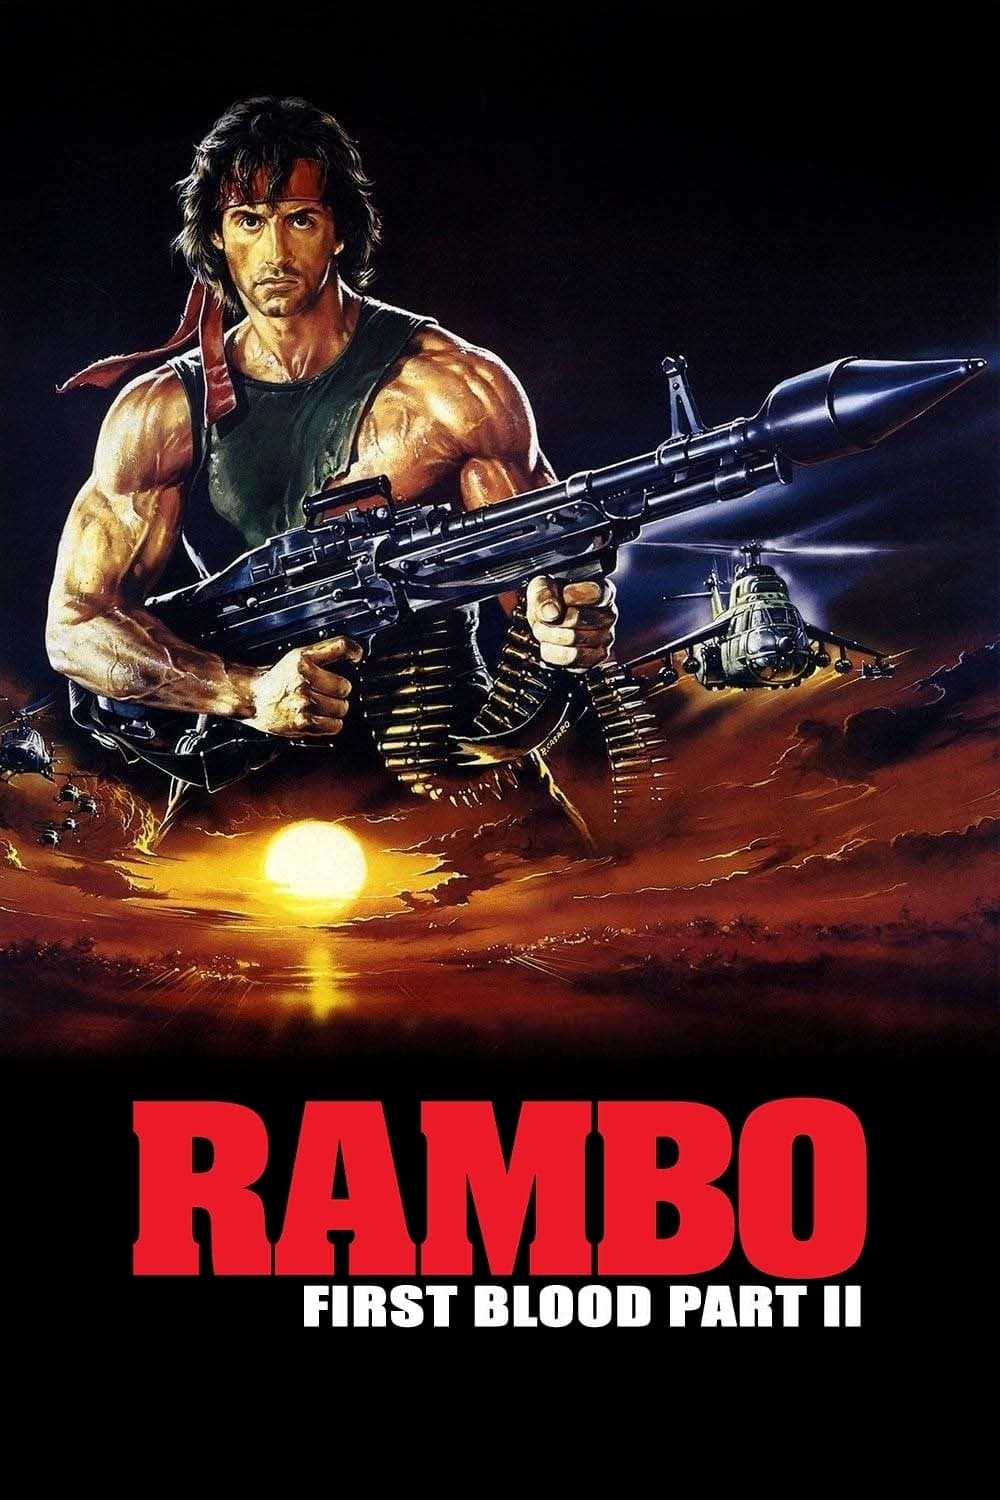 Rambo II - A Vingança do Herói